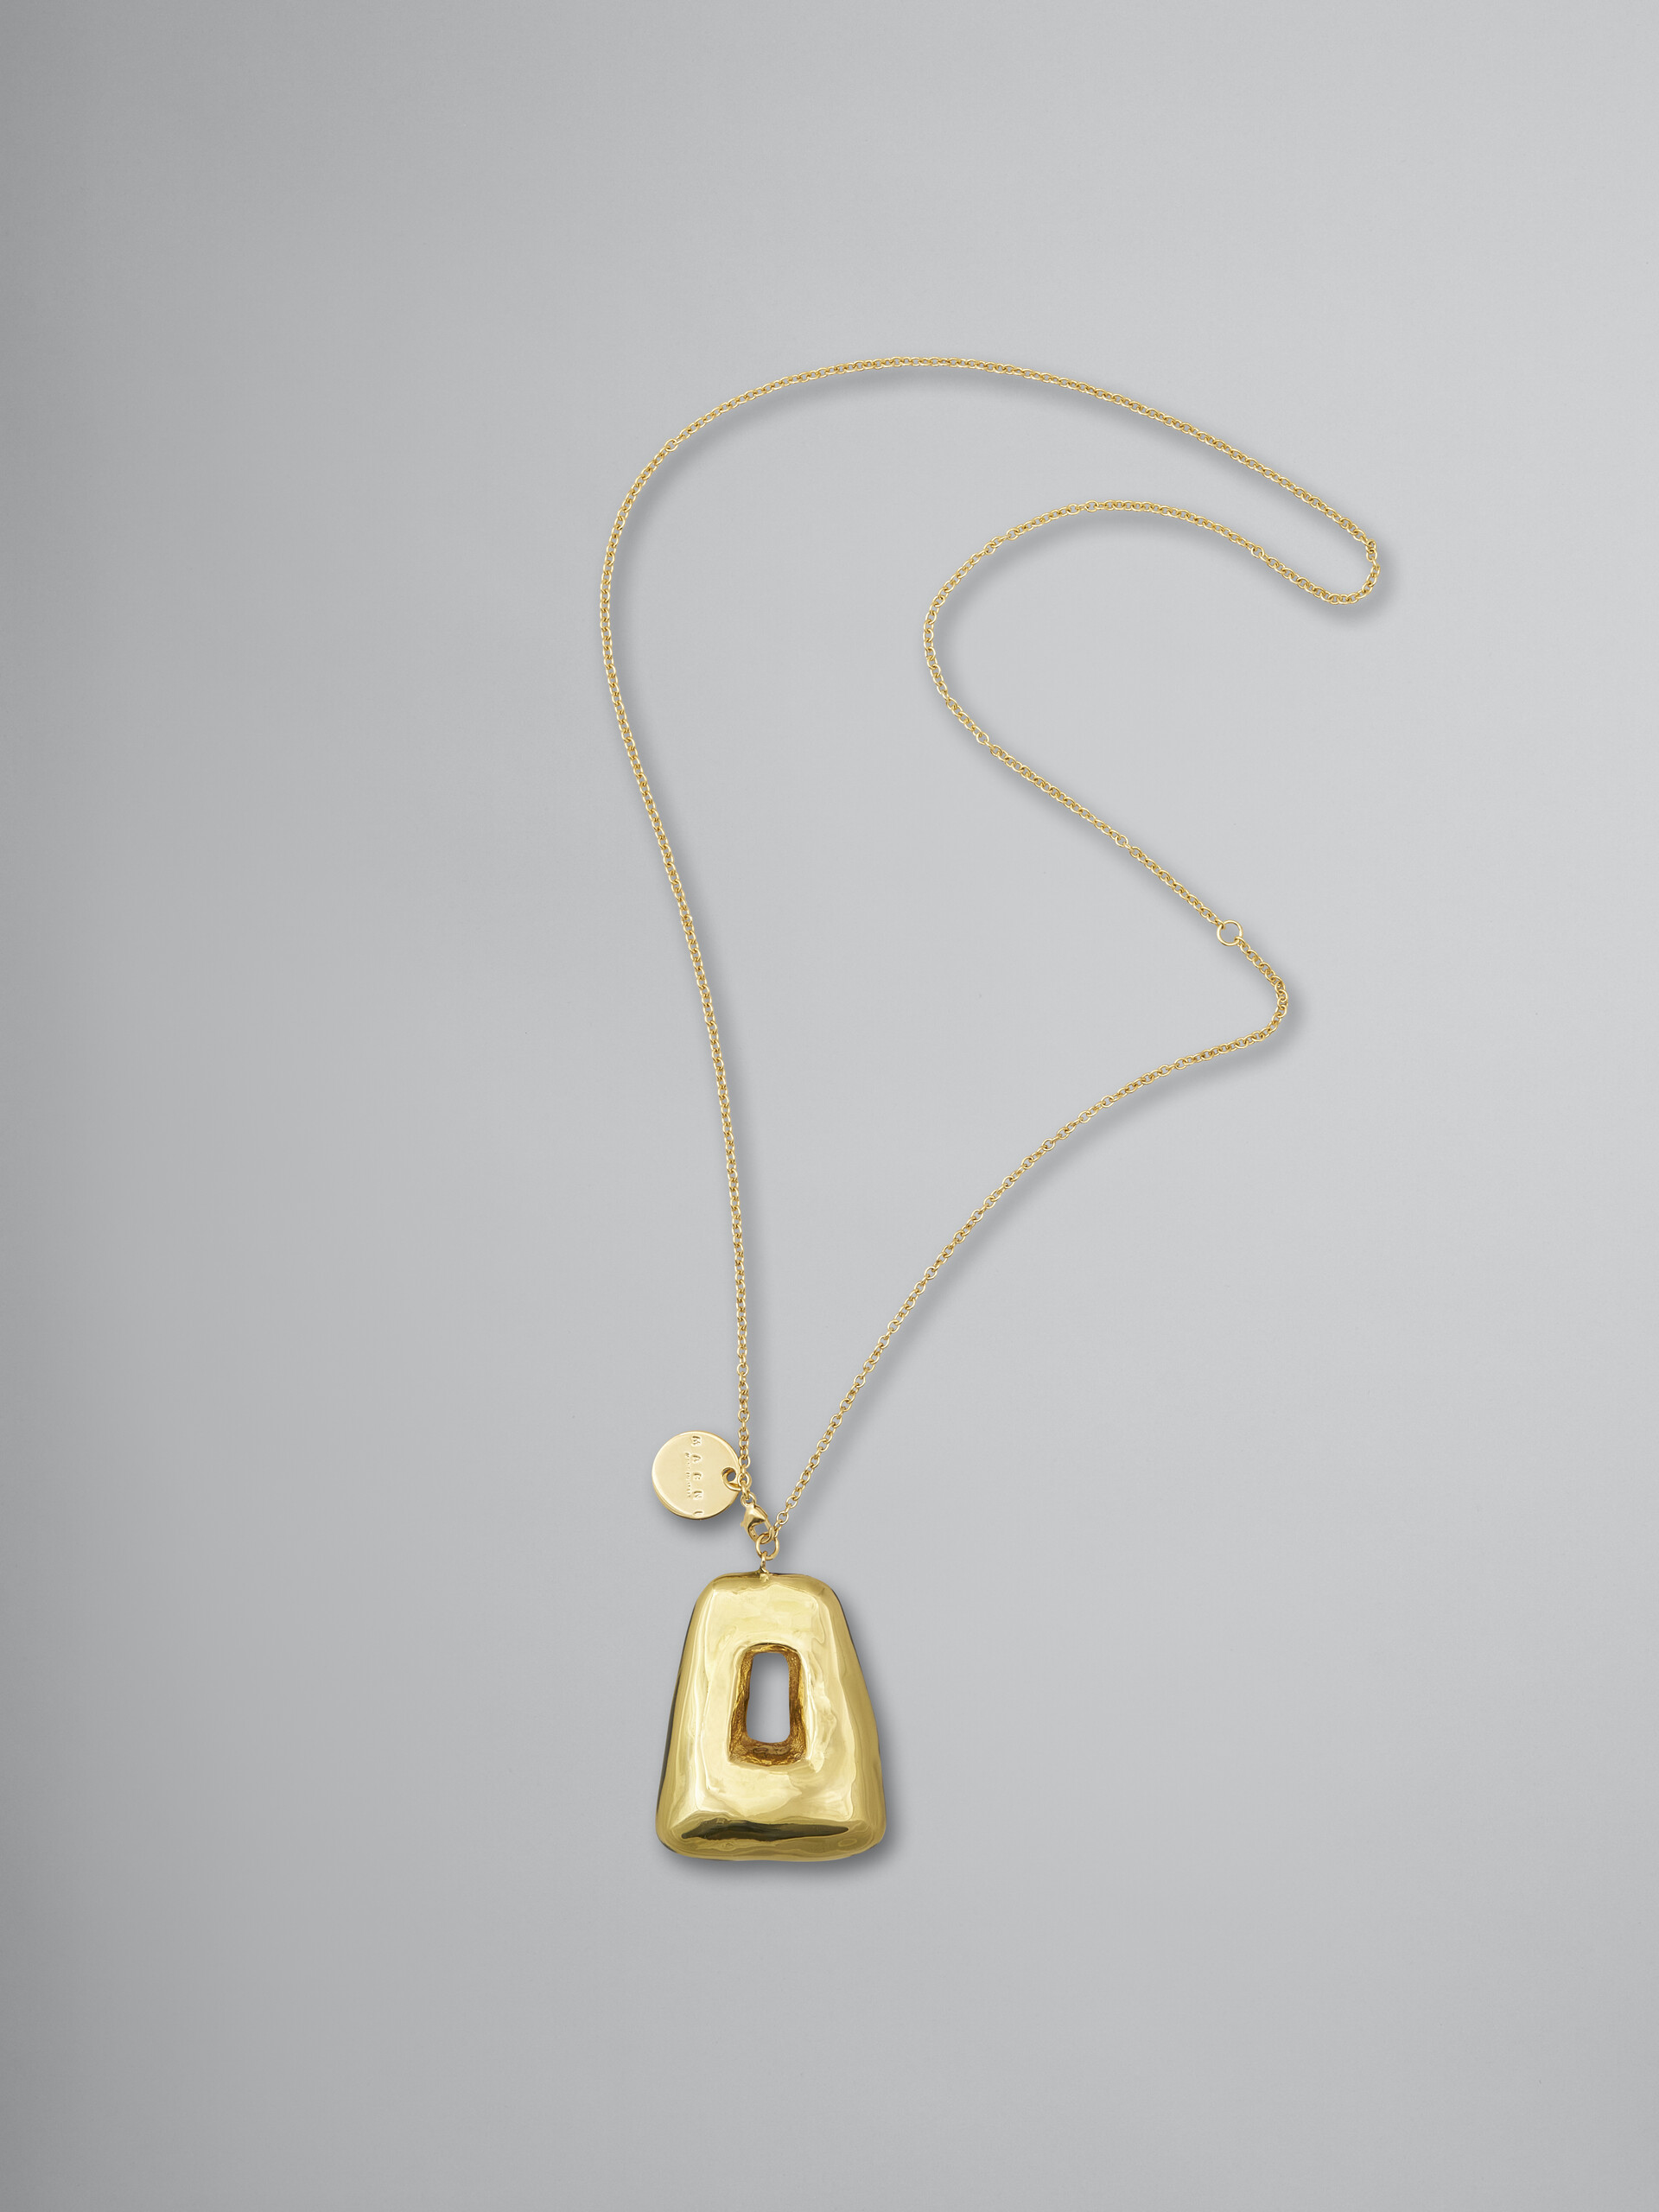 ゴールドメタル TRAPEZE ネックレス クリアエナメルコーティングペンダント付き - ネックレス - Image 1